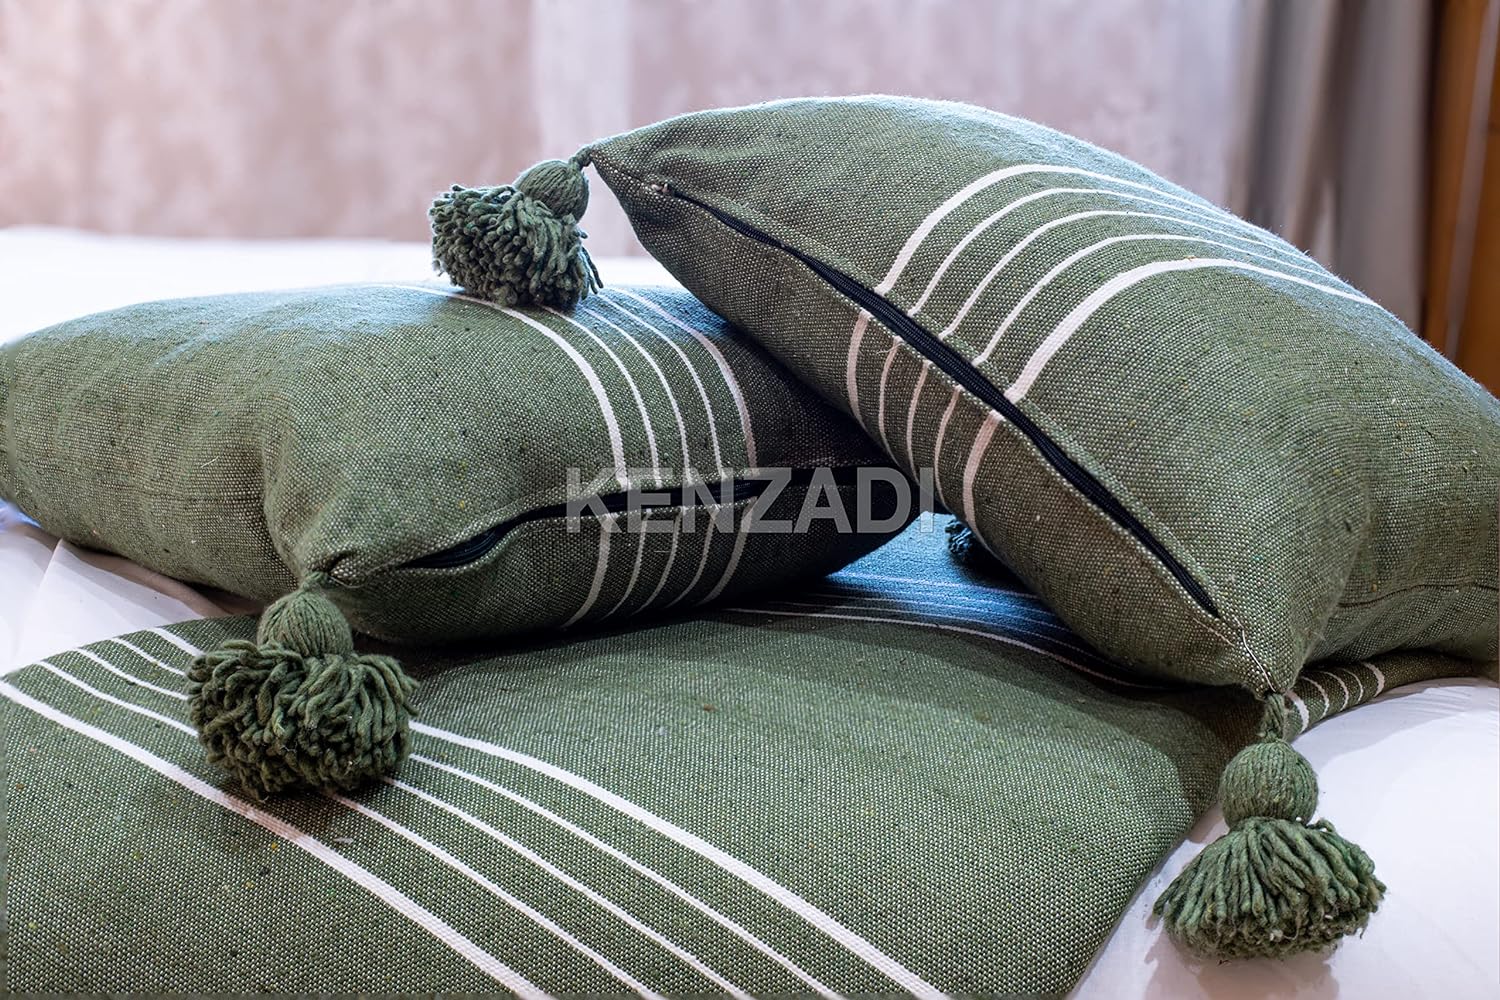 KENZADI Moroccan Handmade Pompom Blanket, Throw Blanket, Pom Pom Blanket, Boho Blanket, Bed Cover, Warm Blanket, Cozy Blanket (Striped Green with pom White, King (U.S. Standard)) - Handmade by My Poufs